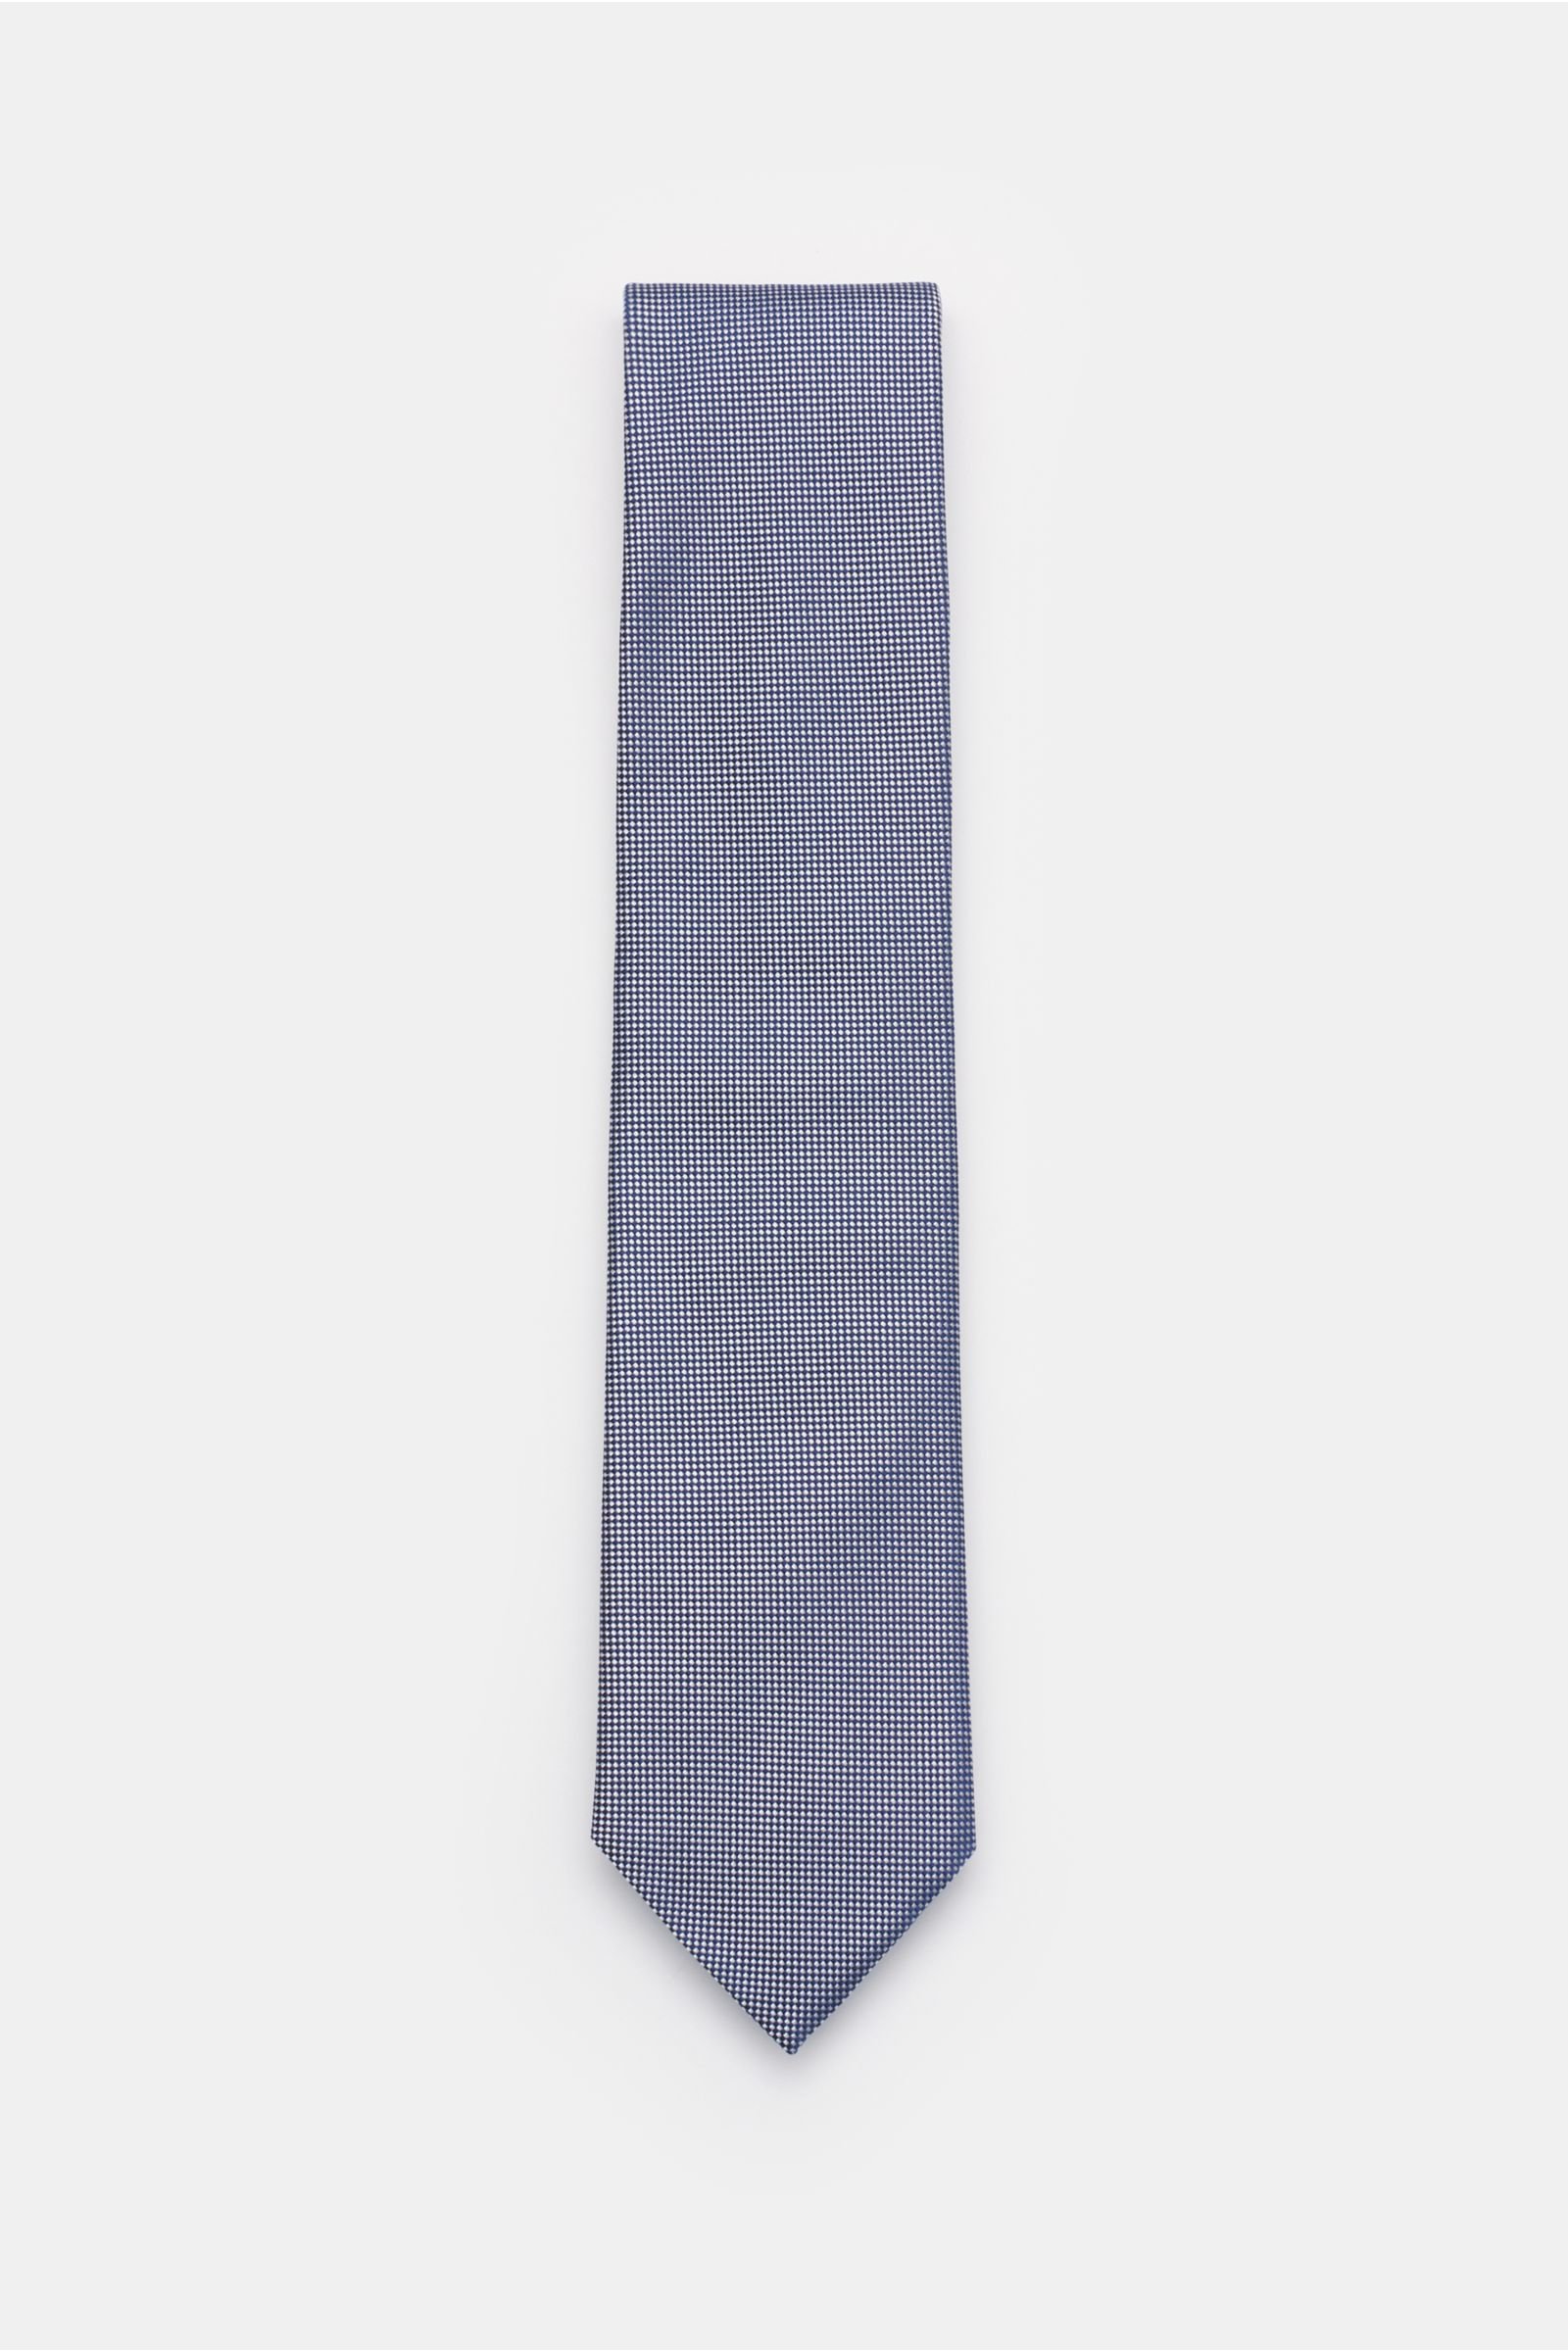 Silk tie navy/silver-grey checked